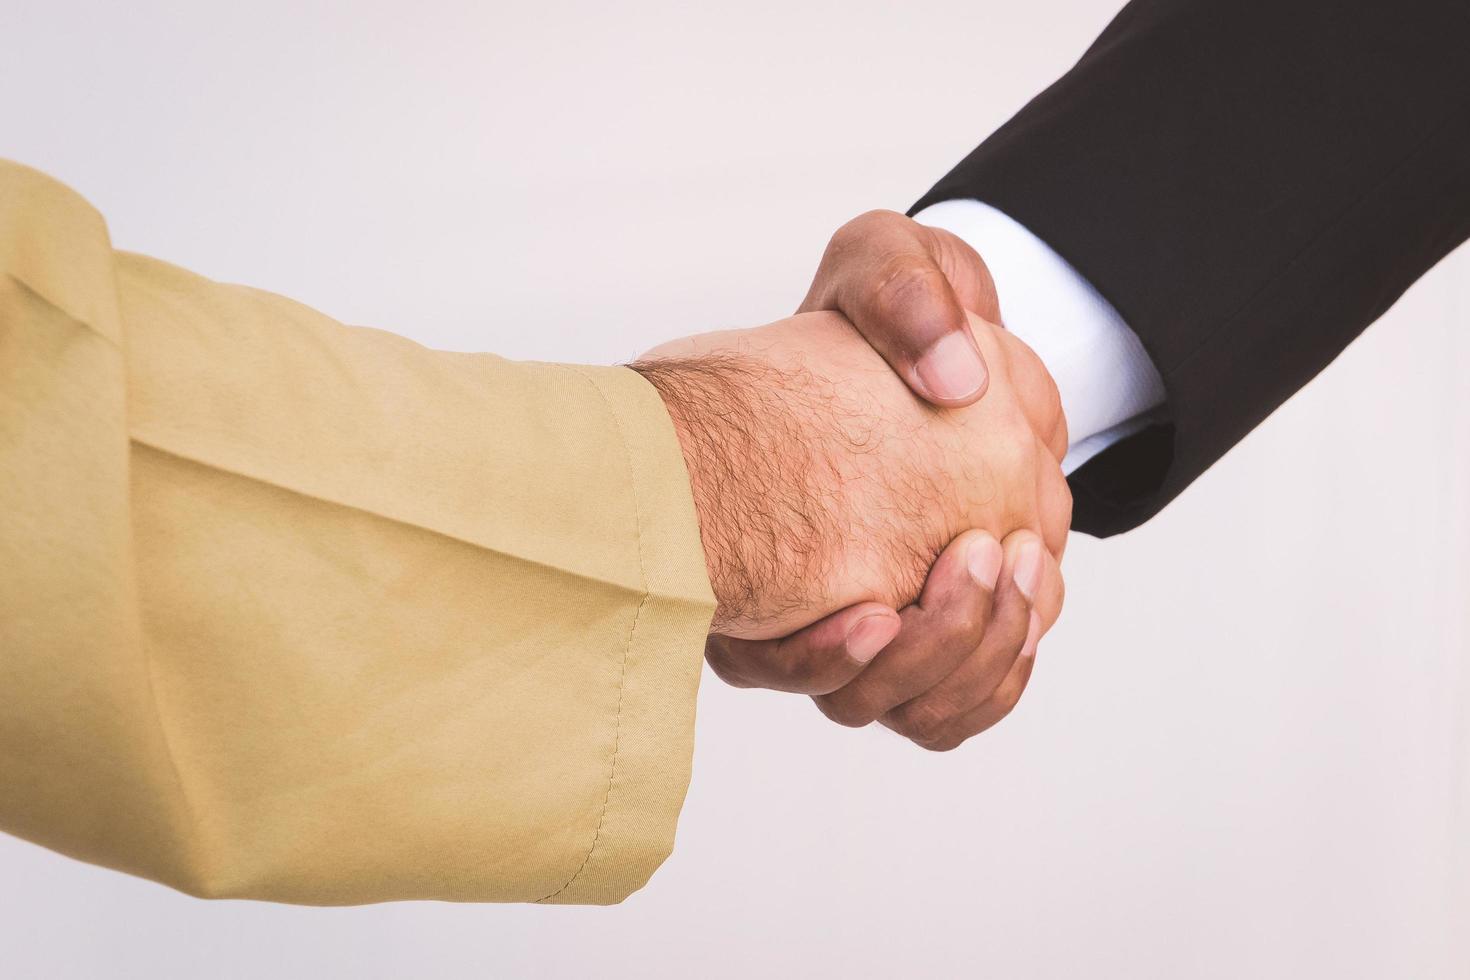 Arab businessman and businessman worker handshaking photo